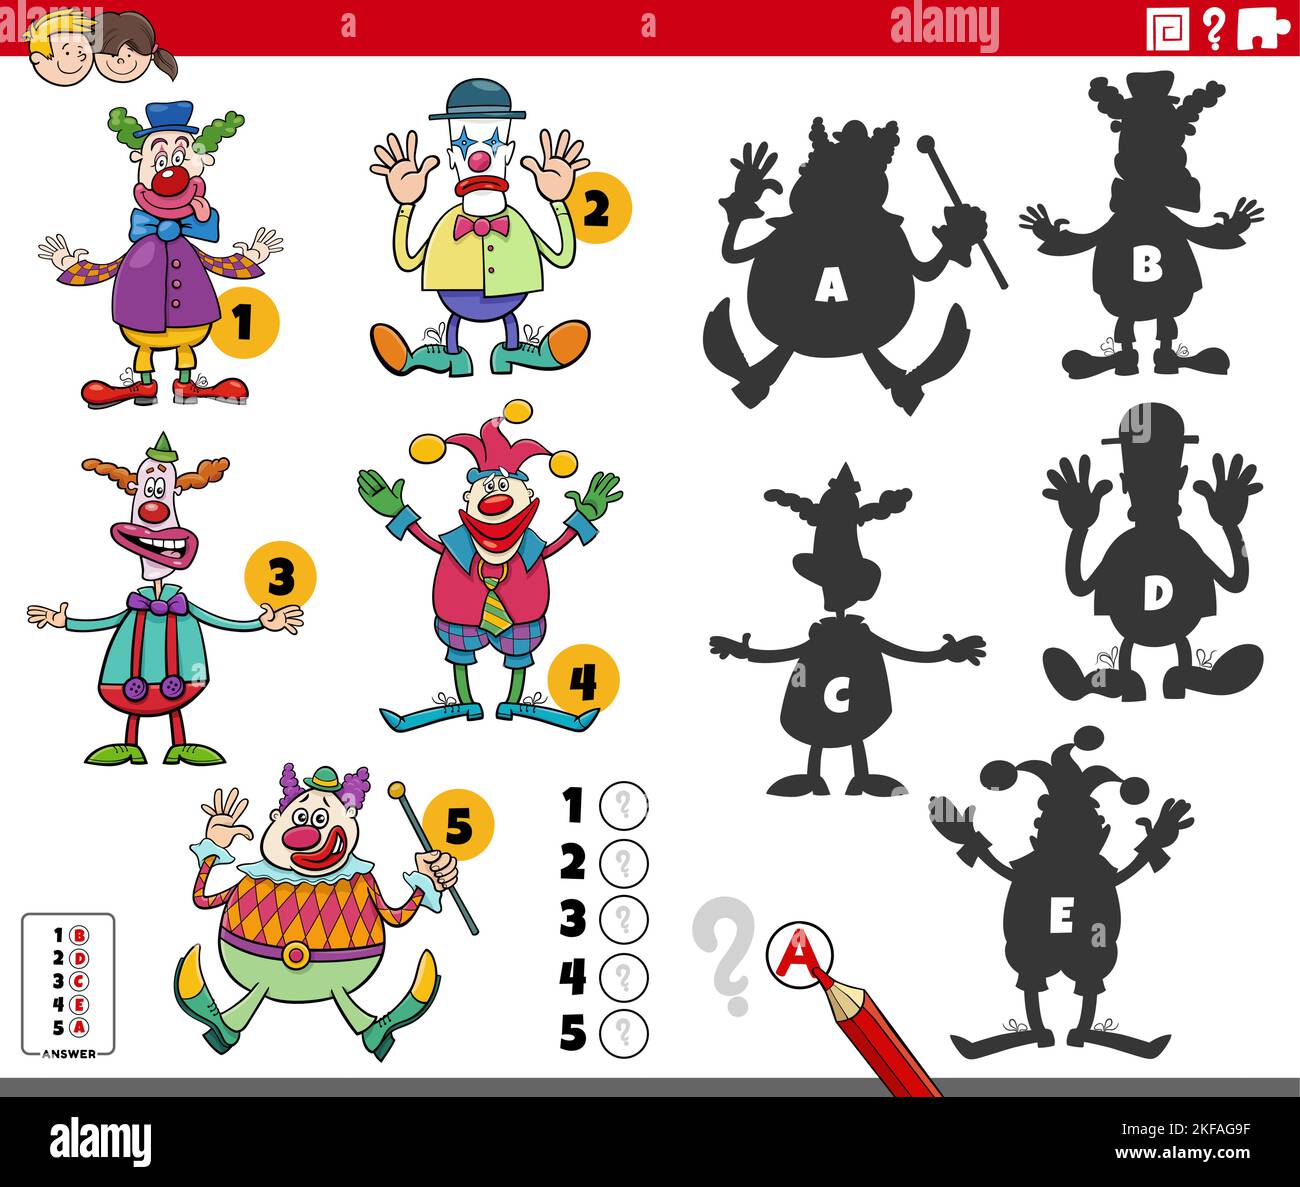 Illustration de dessin animé de trouver les ombres droites à l'image jeu éducatif pour les enfants avec clowns caractères Illustration de Vecteur